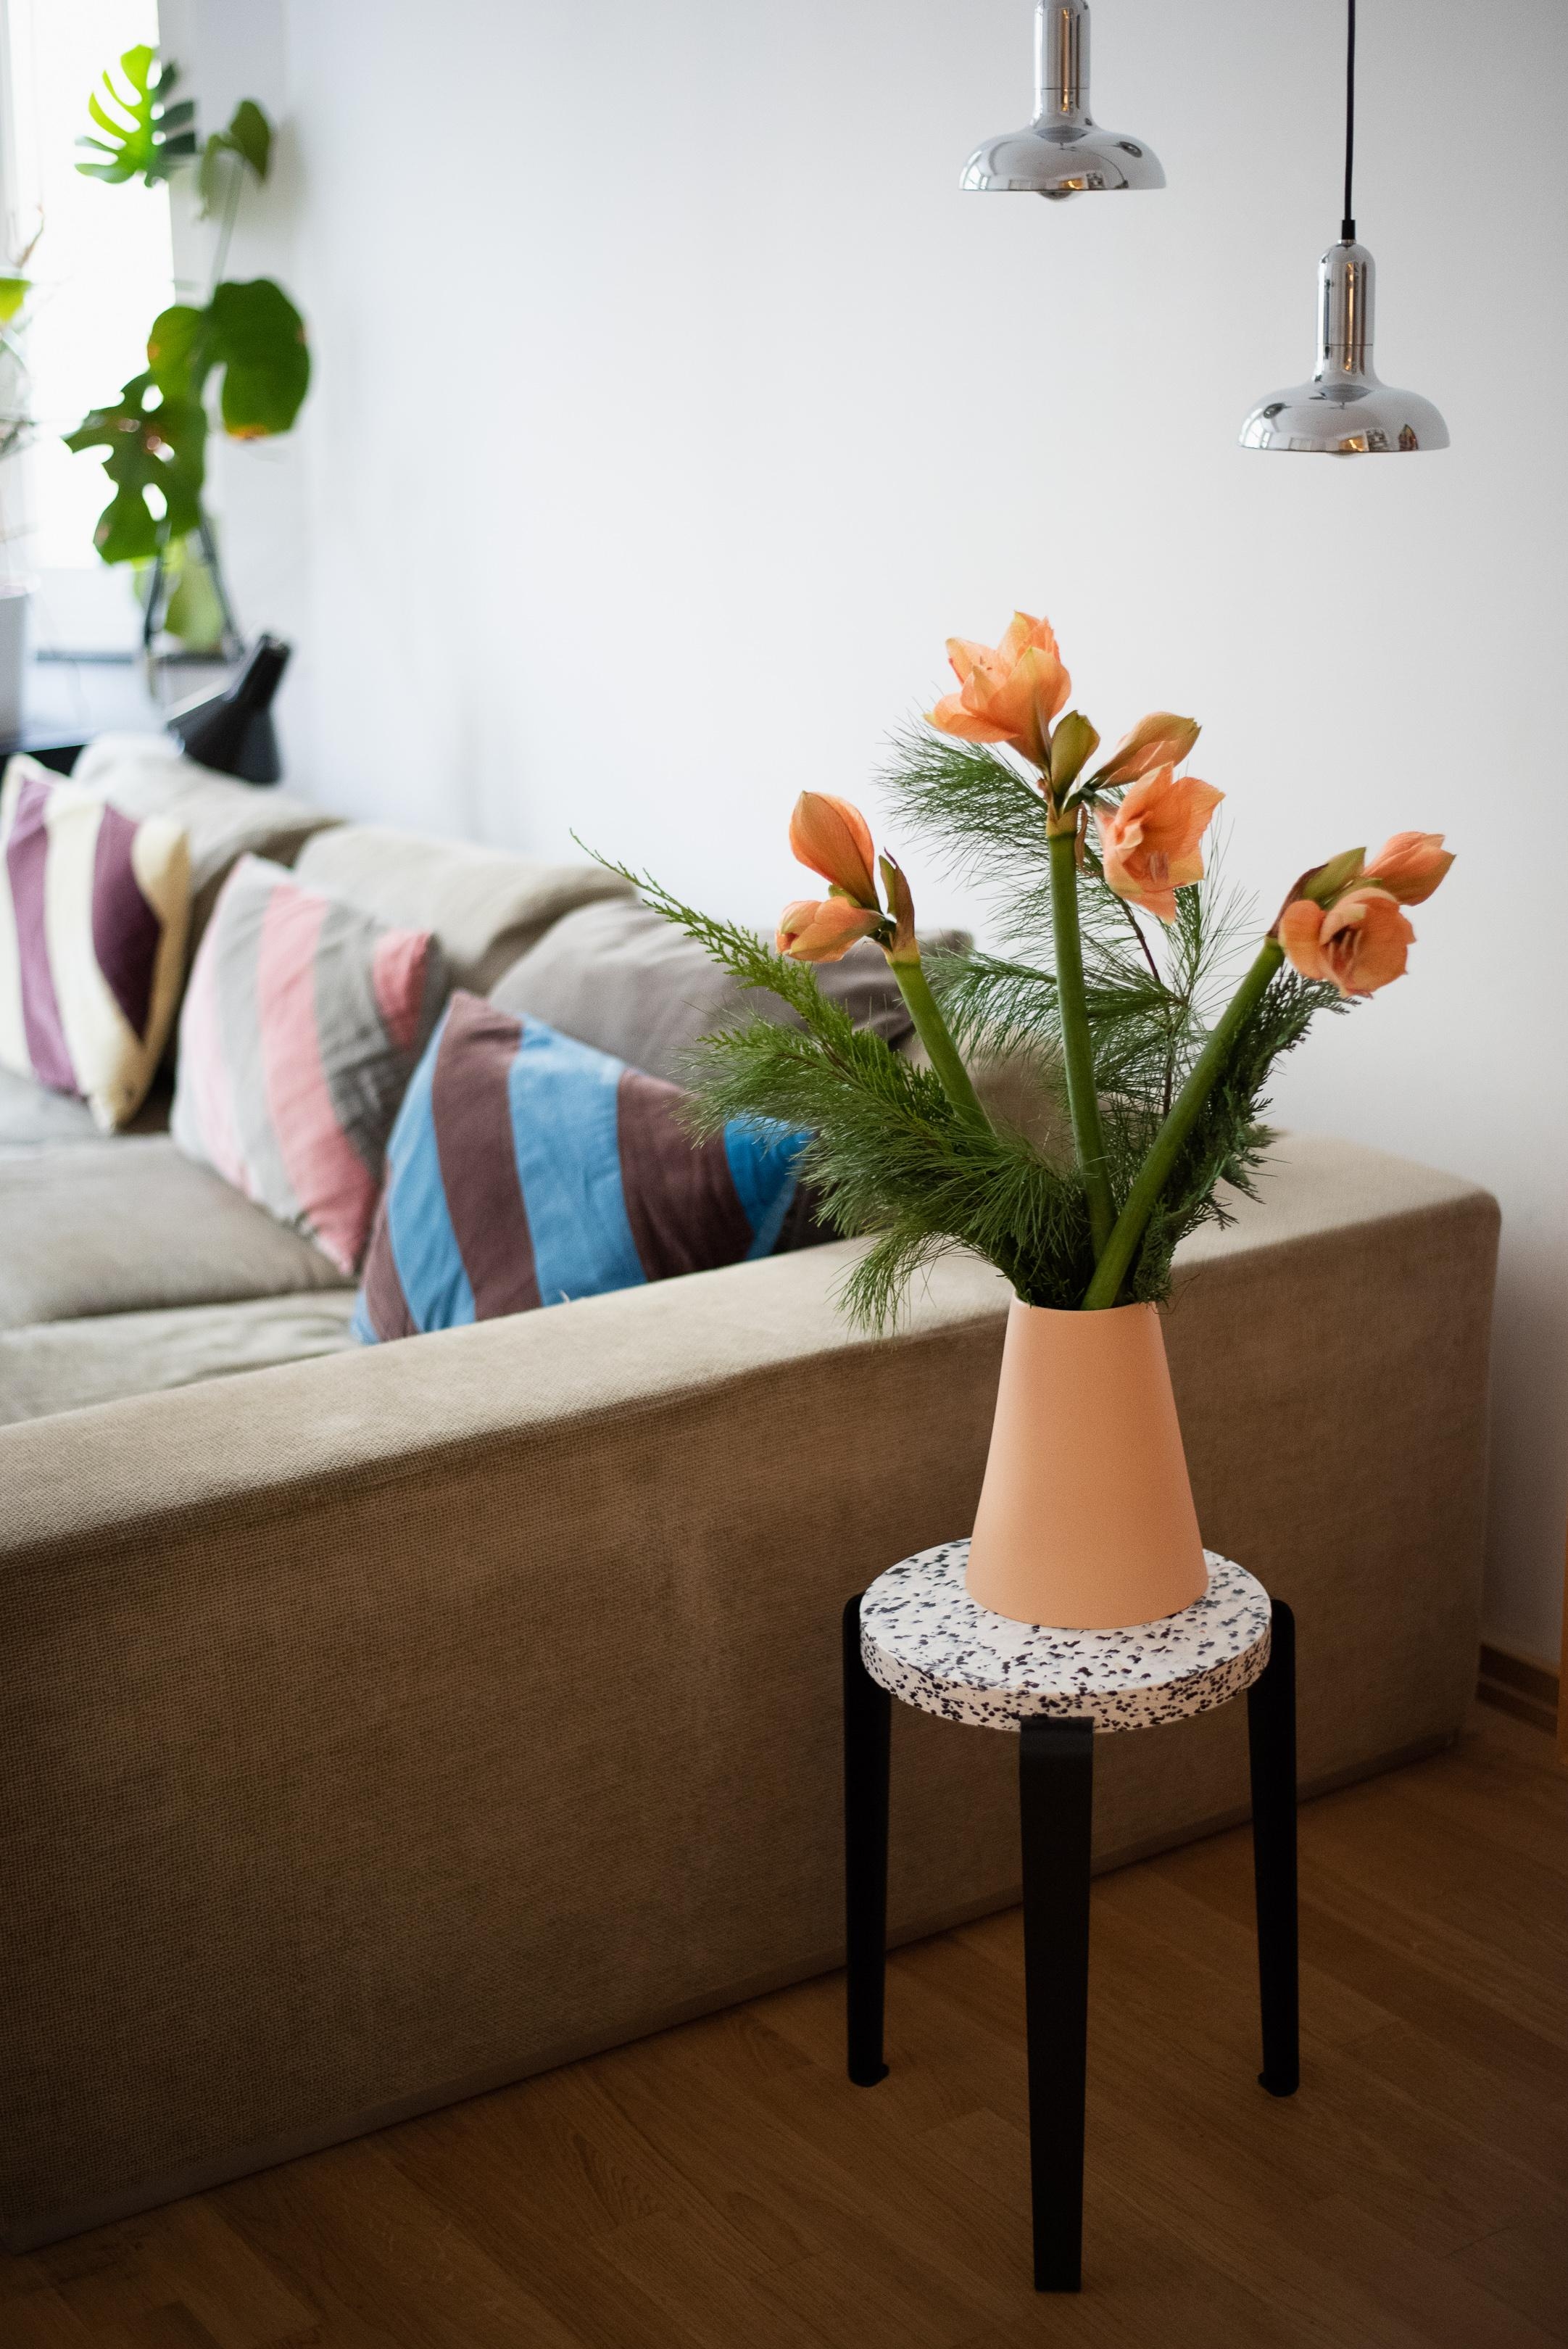 Freitagsblumen 💜 #fridayflowers #amaryllis #hocker #interiordesign #freshflowers #wohnzimmer #sofa